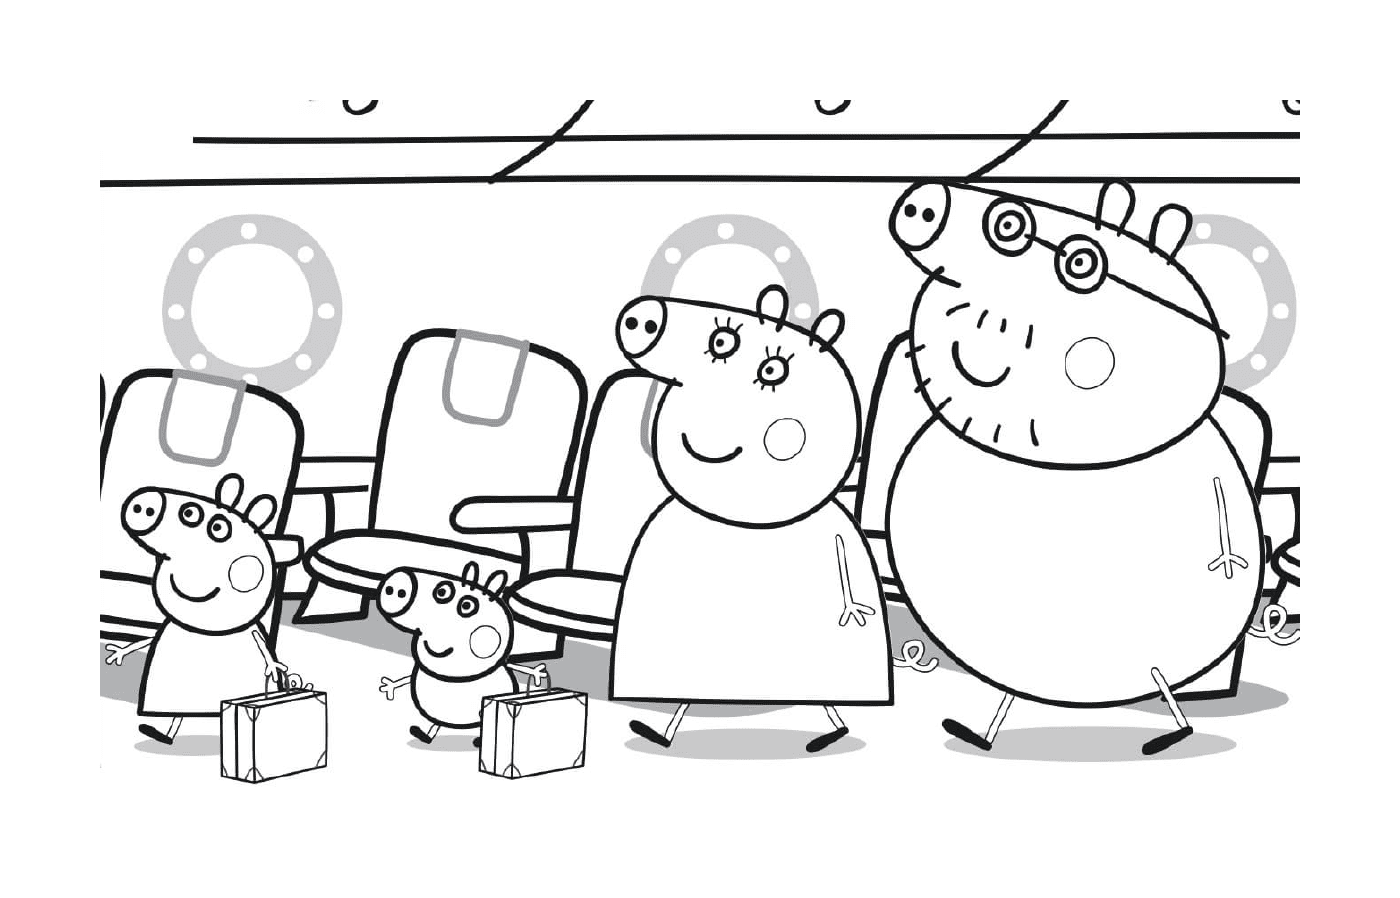  Peppa Pig y su familia se dirigieron a sus asientos en el avión 